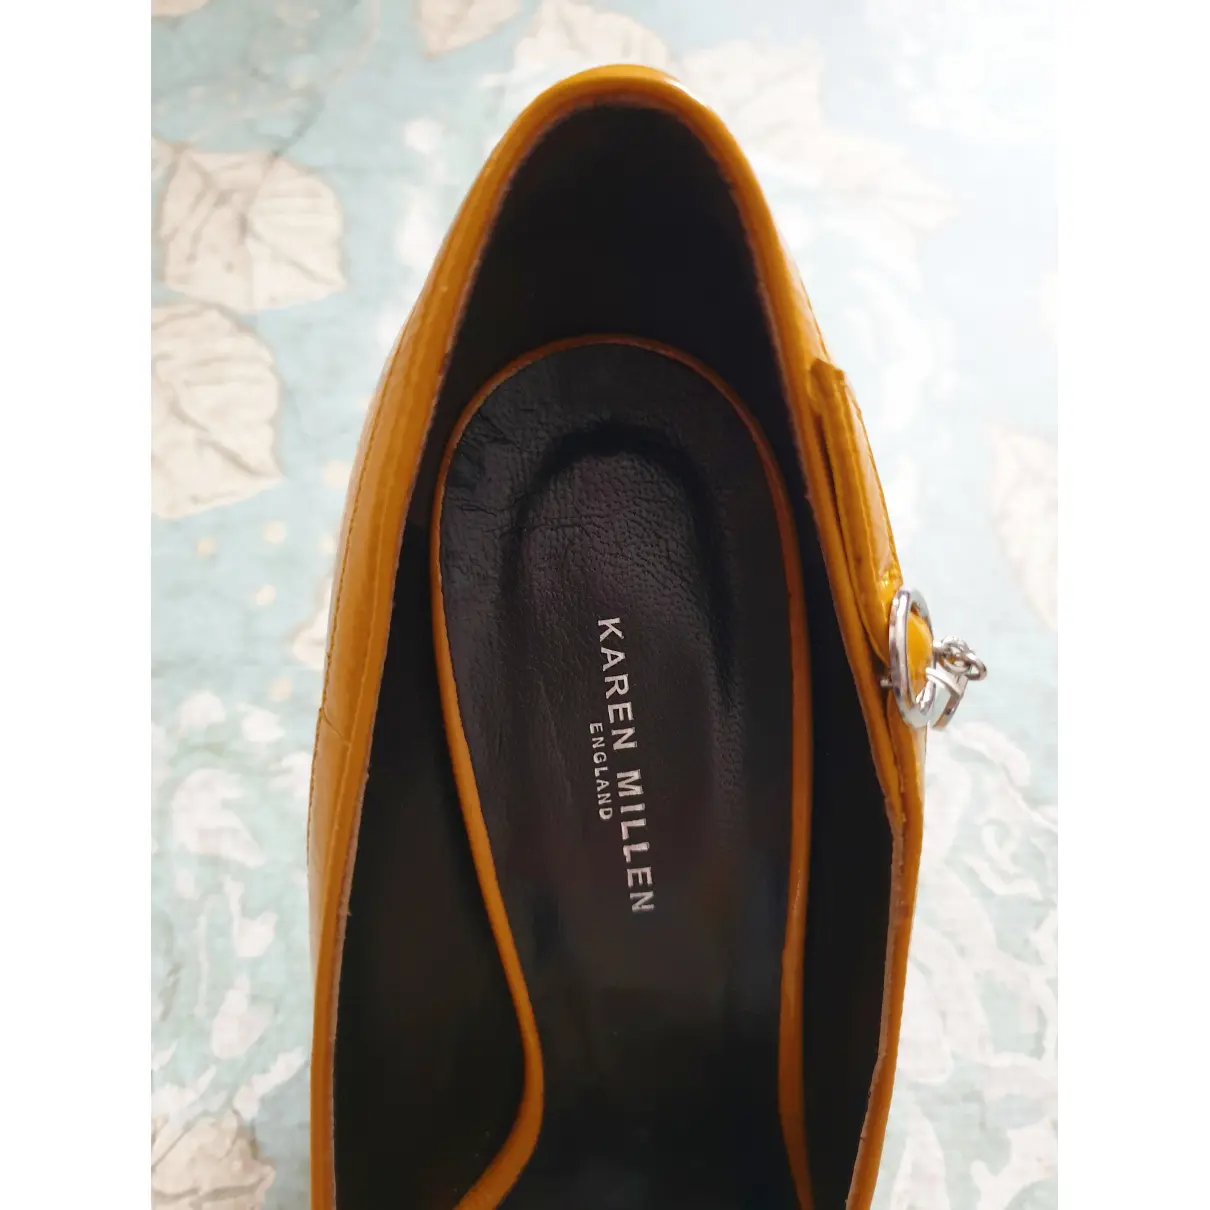 Patent leather heels Karen Millen - Vintage